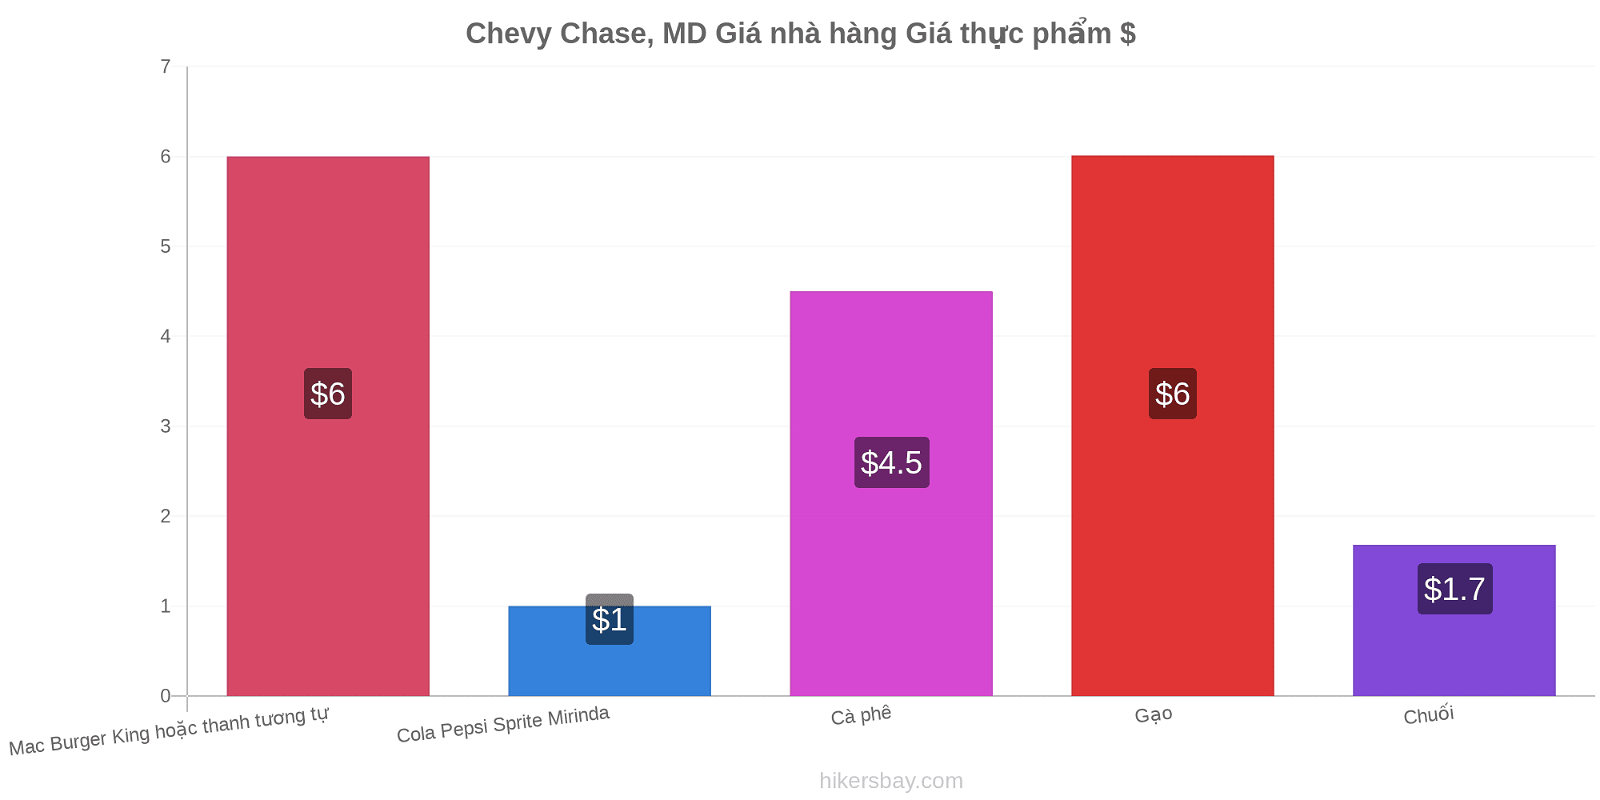 Chevy Chase, MD thay đổi giá cả hikersbay.com